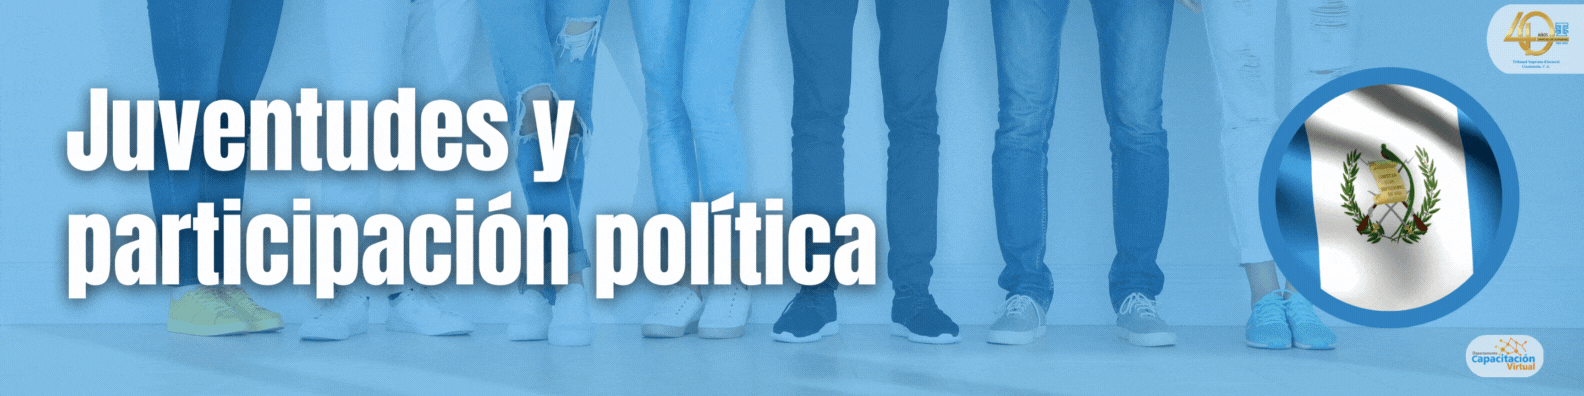 Juventudes y participación política